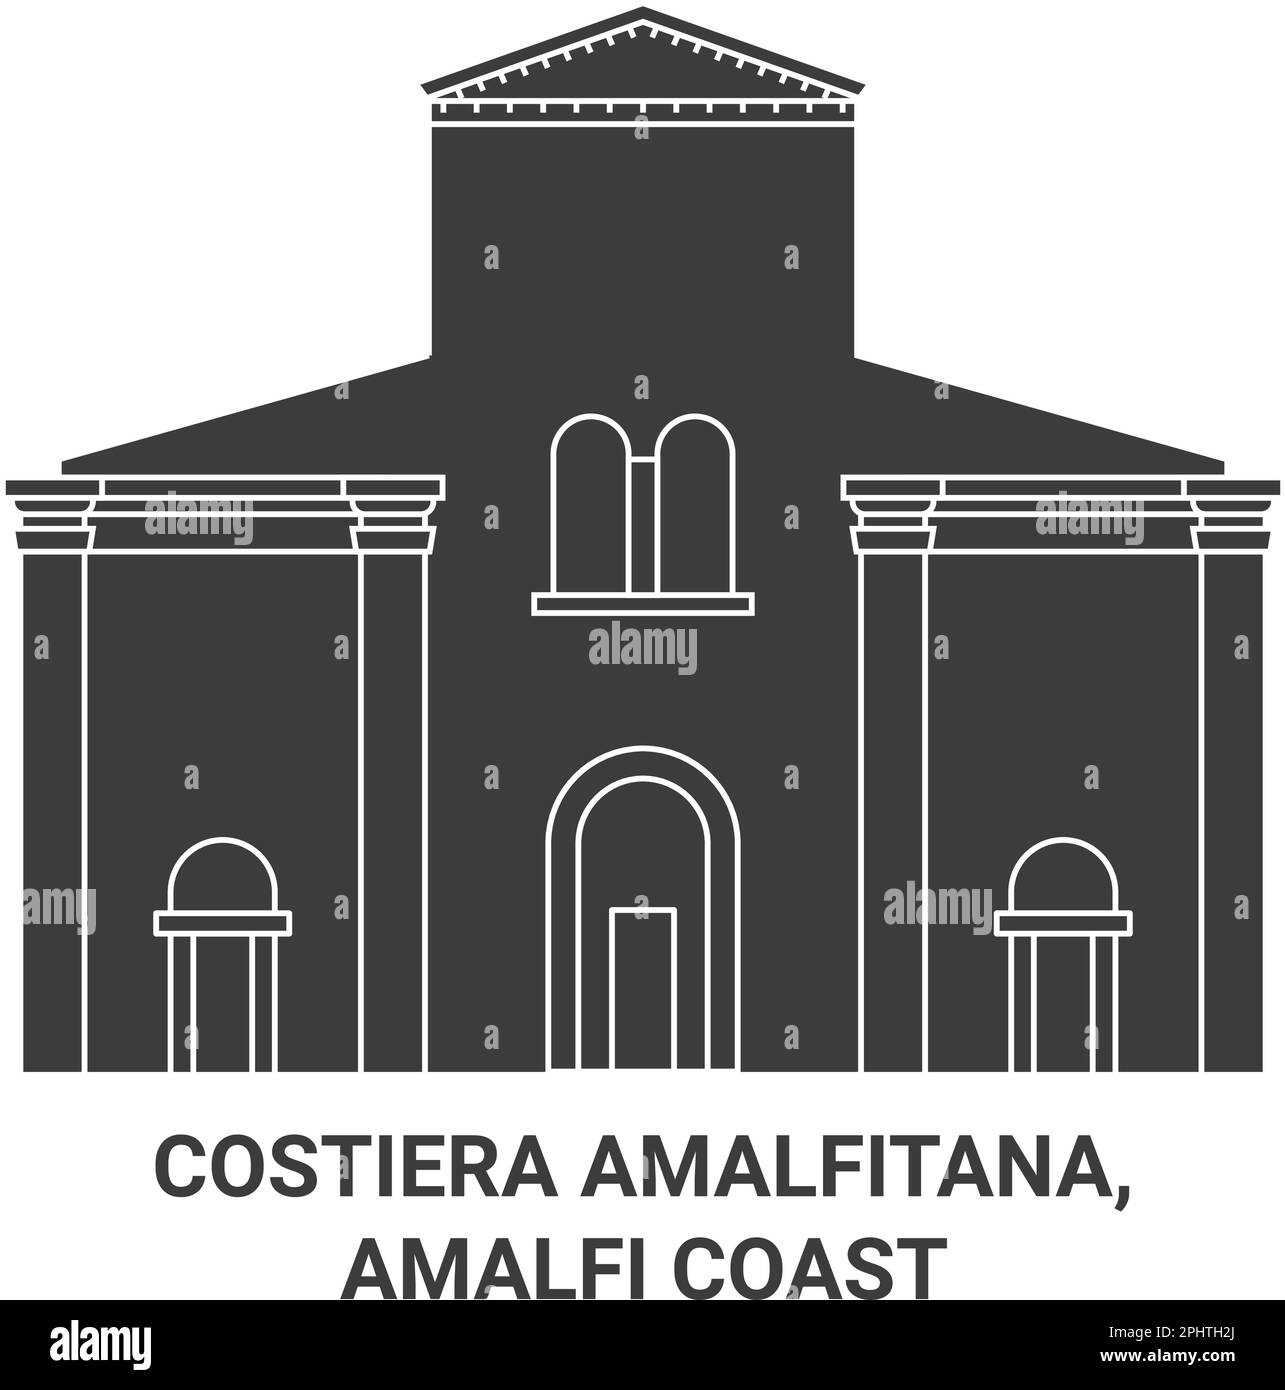 Italie, Costiera Amalfitana, côte amalfitaine illustration du vecteur de voyage Illustration de Vecteur